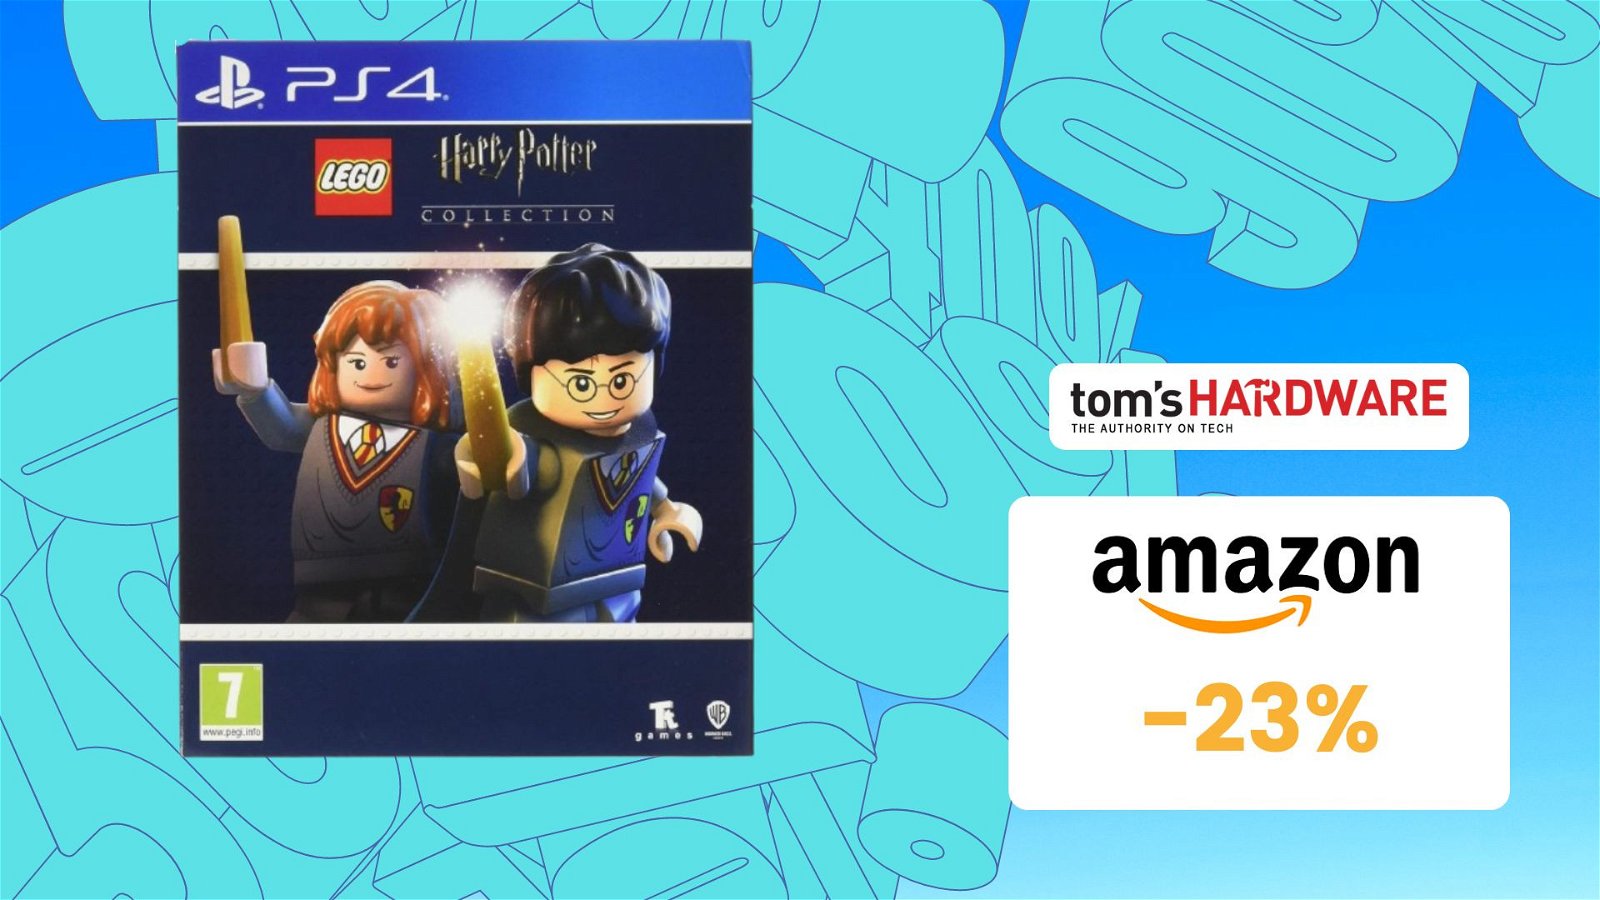 Immagine di LEGO Harry Potter: Collection per PS4 in OFFERTA a SOLI 14€!